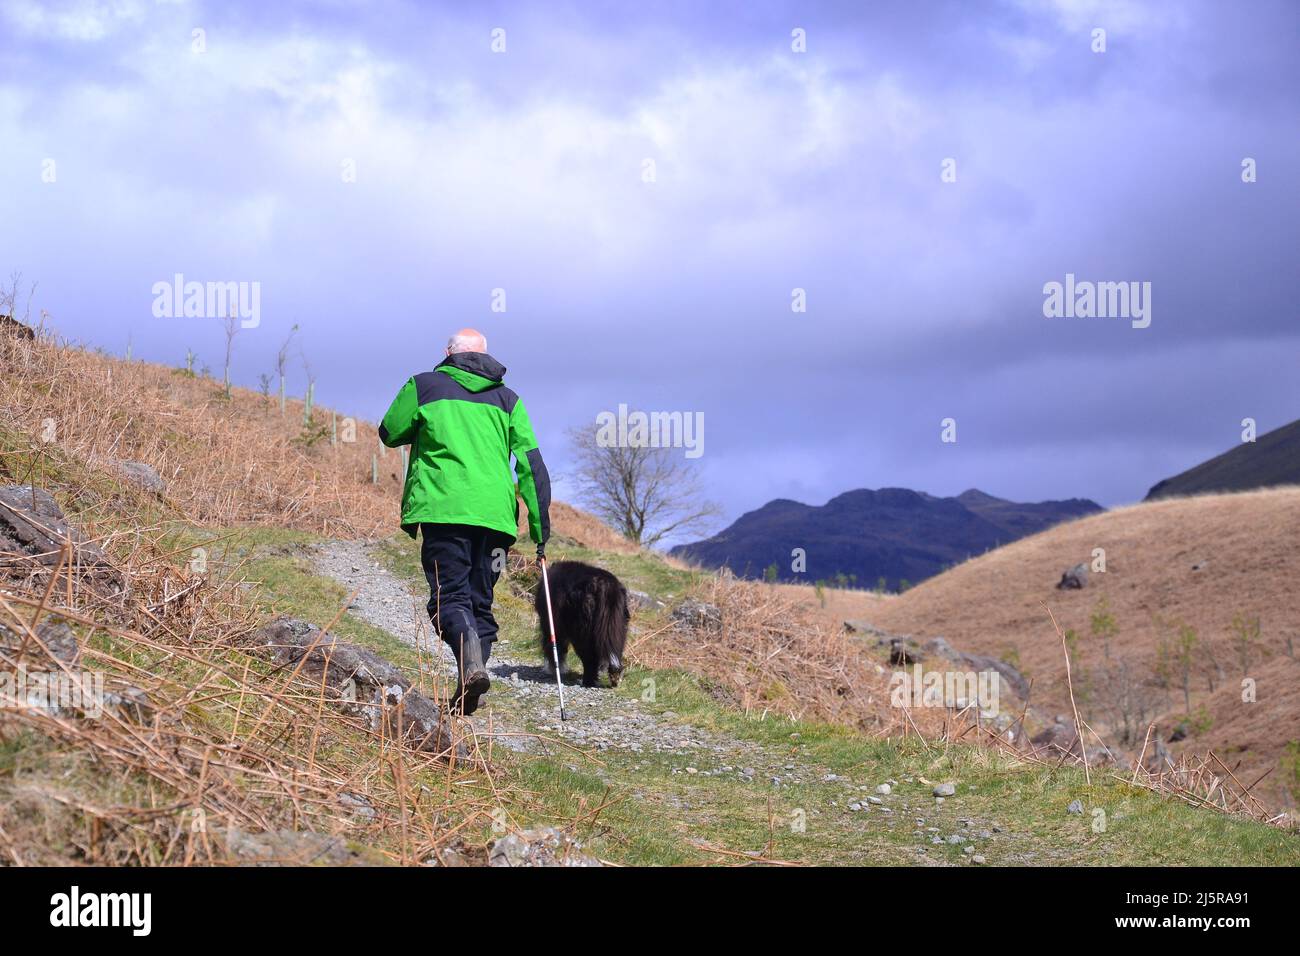 Ein älterer Mann, der mit seinem Hund auf einem Hügel im Lake District National Park, Cumbria, England, Großbritannien, einen Pfad entlang läuft. Eine Umfrage von Nuffield Health unter 8.000 Menschen in Großbritannien hat auch gezeigt, dass die meisten Erwachsenen in Großbritannien nicht genug Sport treiben. Als Reaktion auf die Umfrage hat Nuffield Health eine Kampagne mit dem Titel „Find Time for Your Mind“ ins Leben gerufen, mit der die Menschen dazu ermutigt werden sollen, täglich 5 Minuten mehr Sport zu treiben oder sich auf ihr geistiges Wohlbefinden zu konzentrieren. Stockfoto